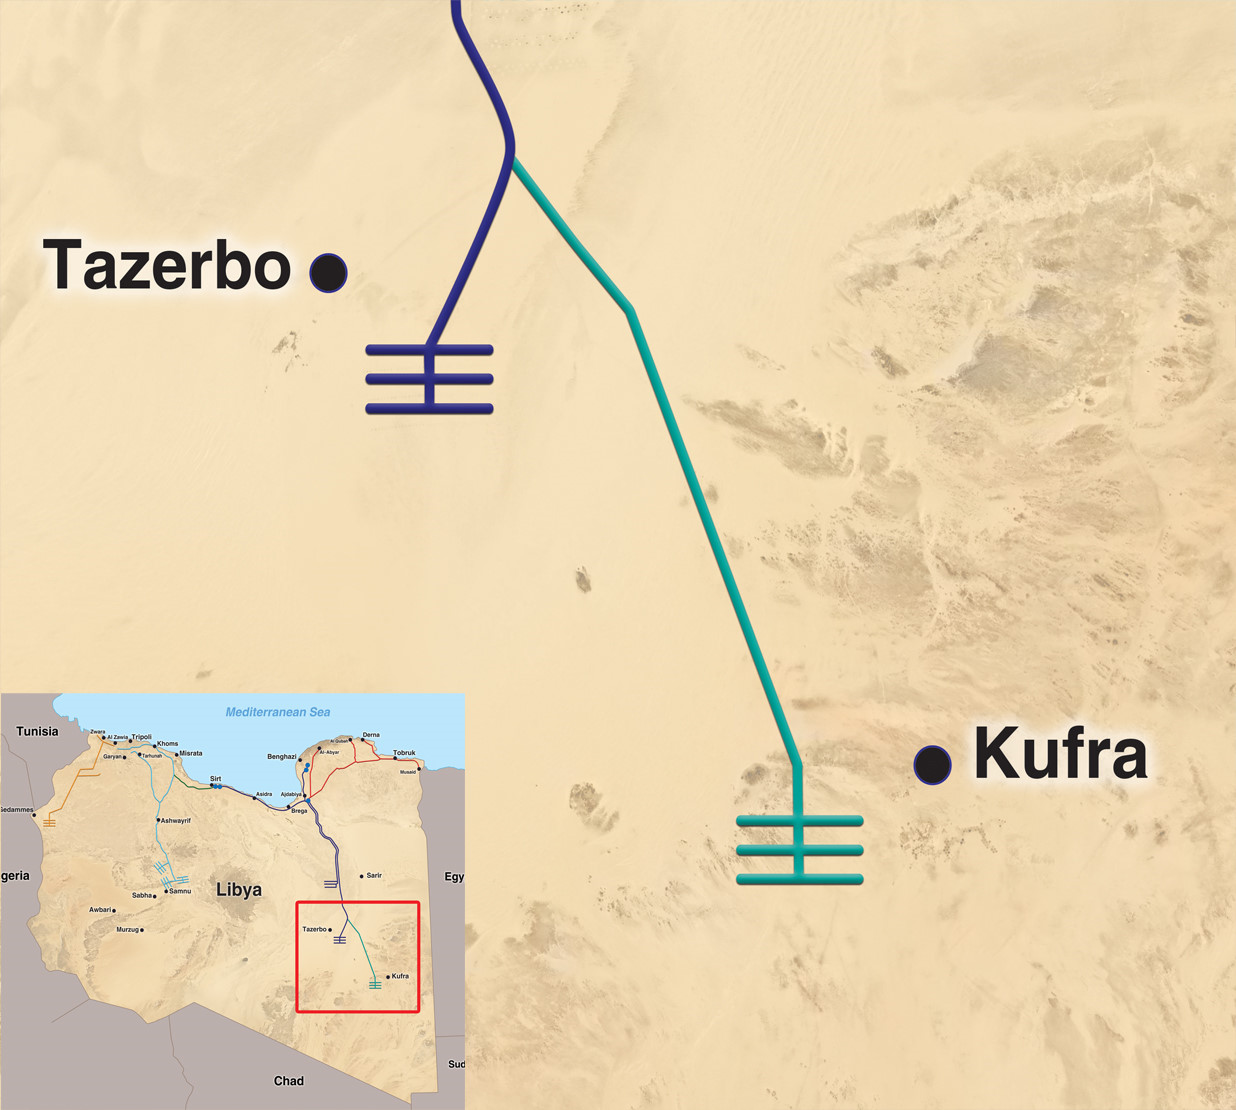 Al-Kufra – Tazerbo